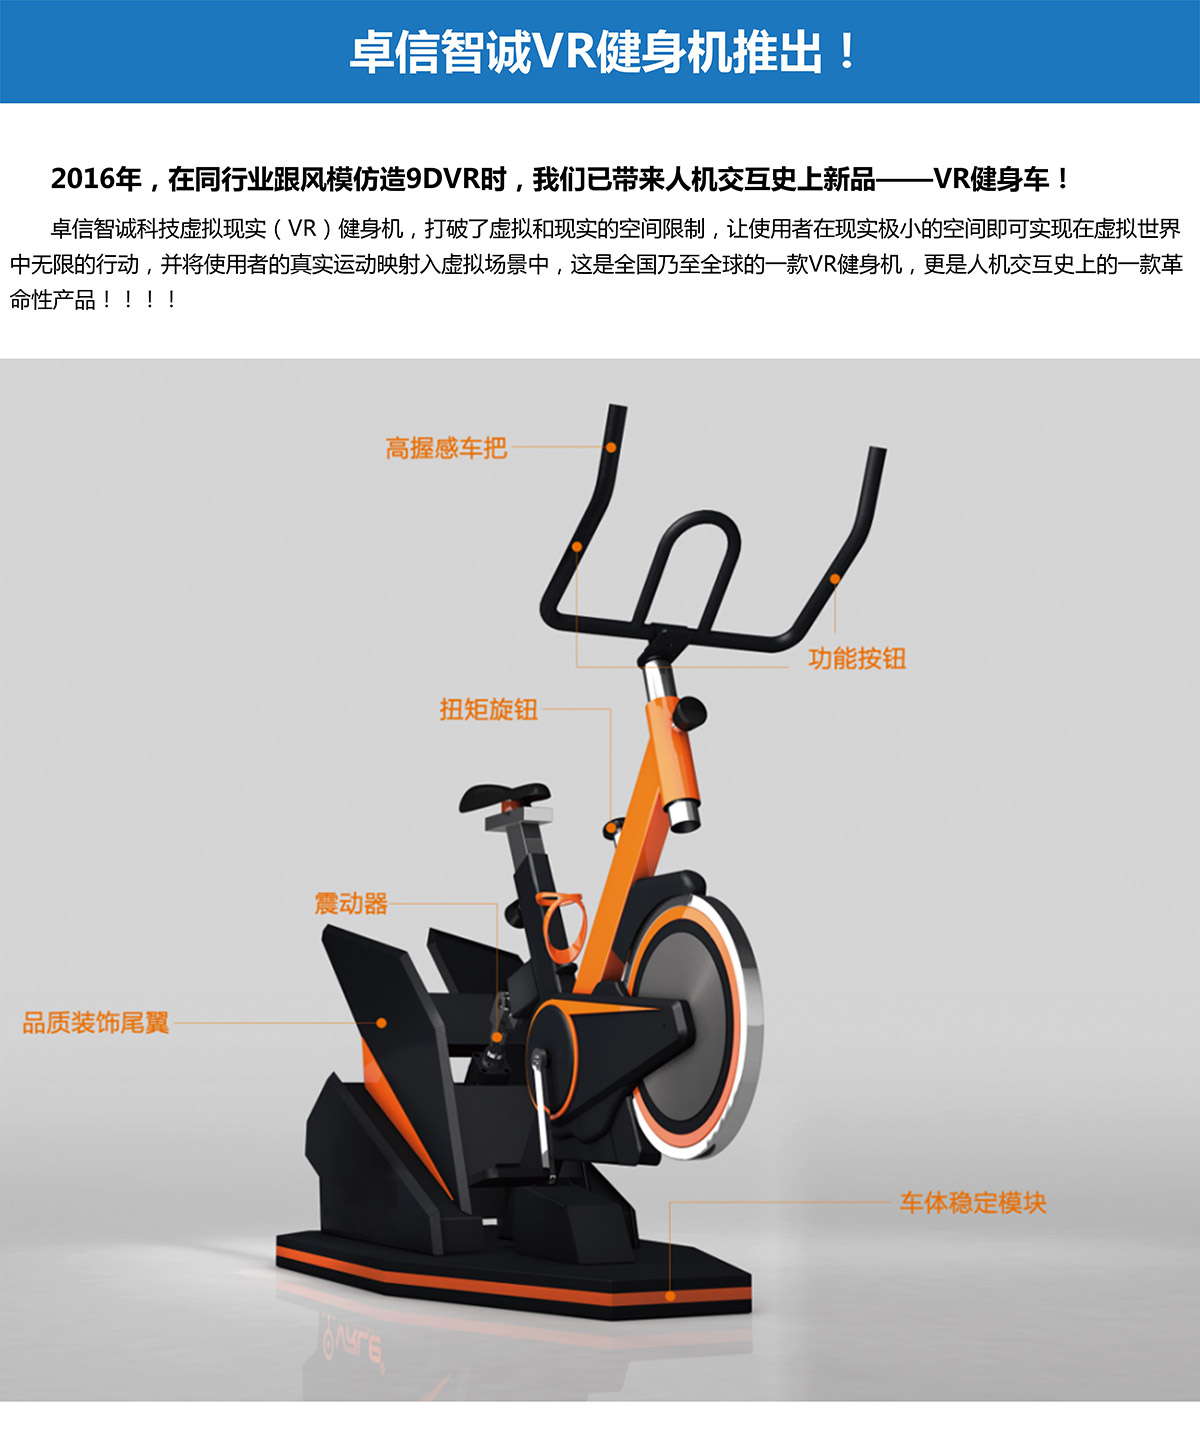 04-卓信智诚VR健身机重磅推出.jpg